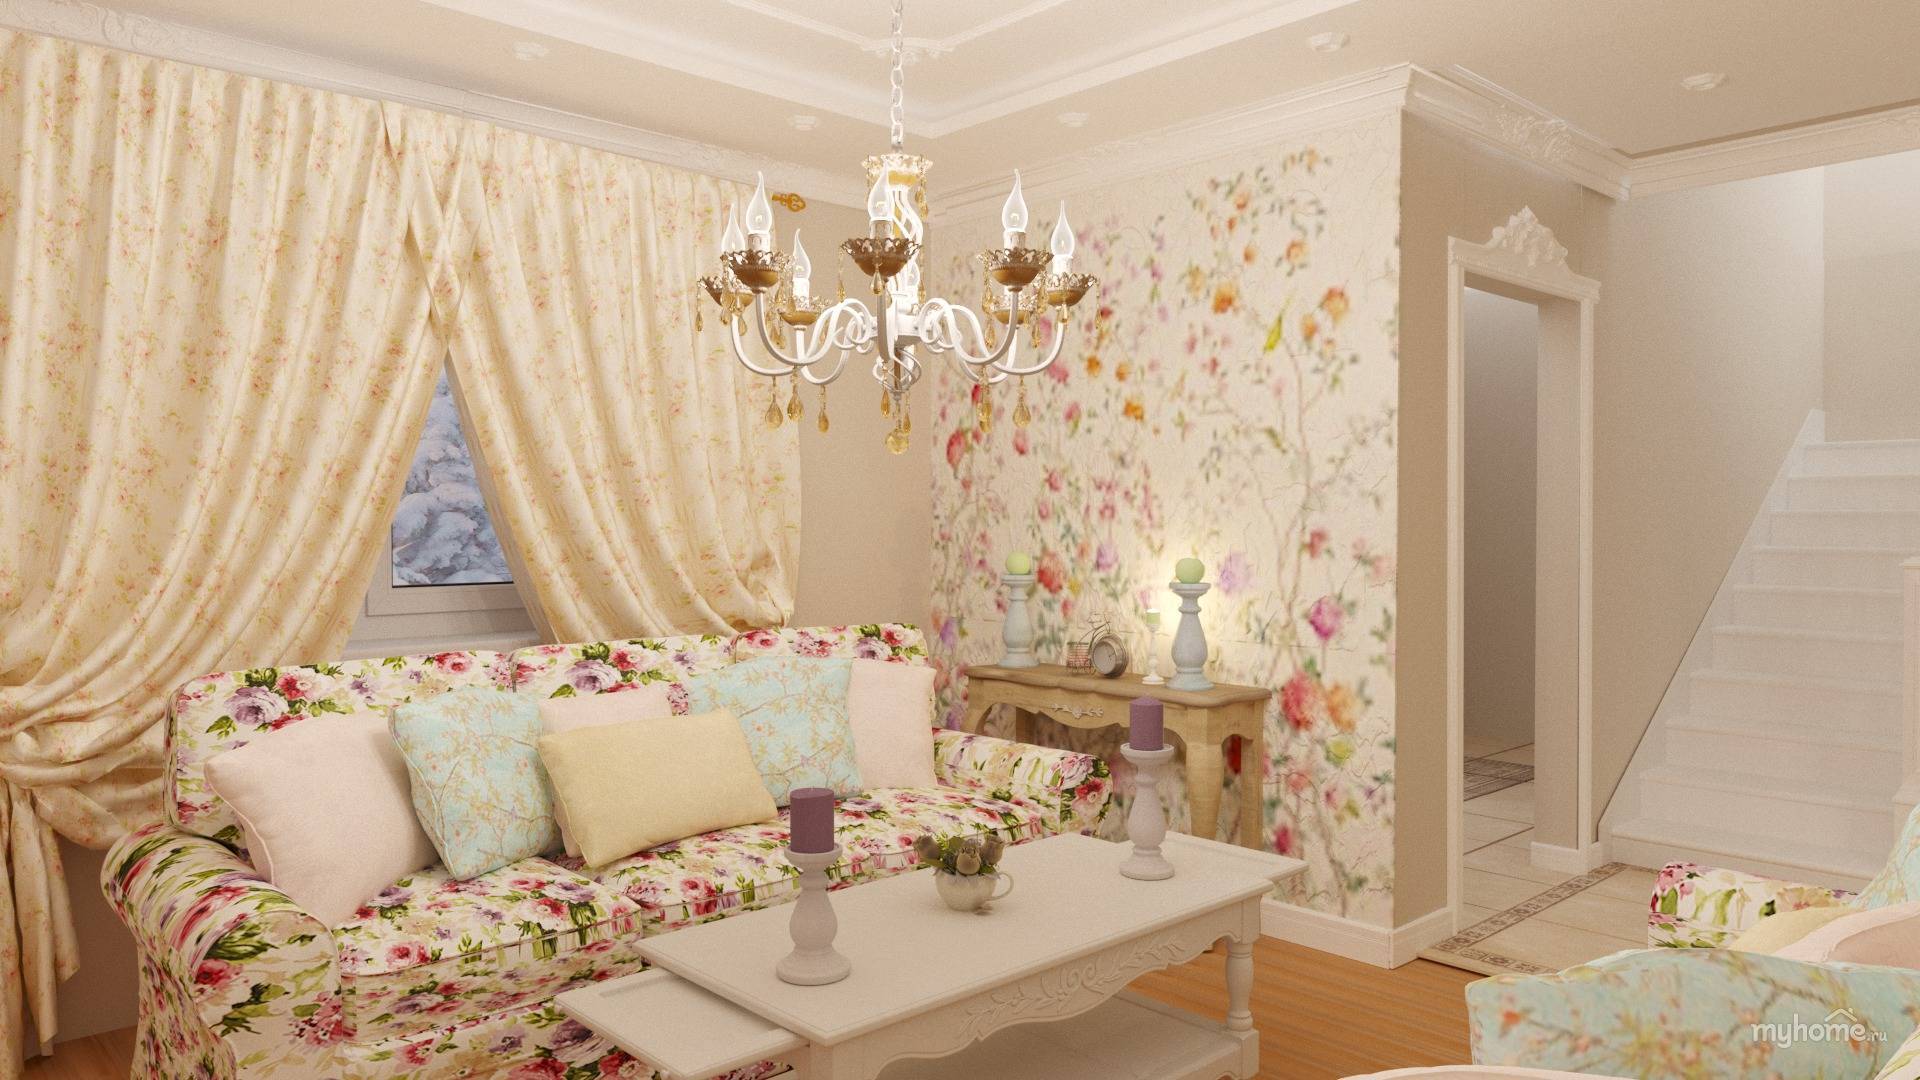 Обои в стиле прованс: фото в интерьере, для стен кухни и в спальню, в цветочек для комнаты гостиной, кантри